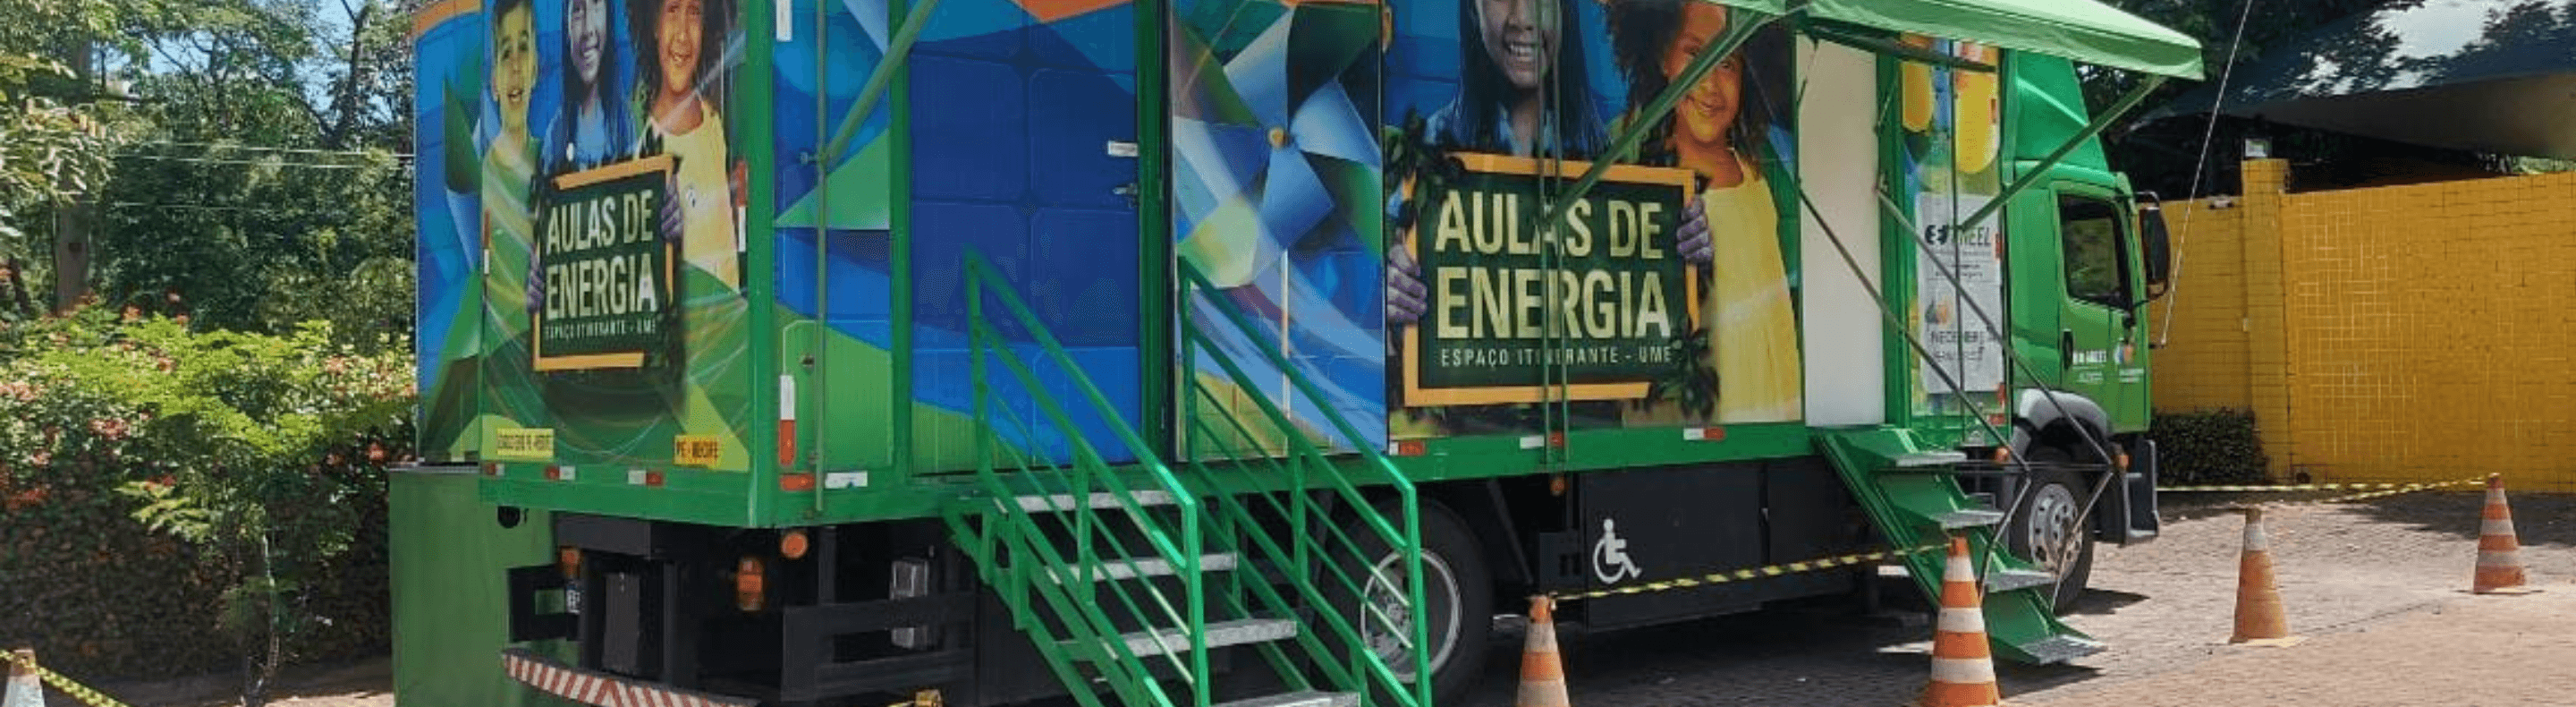 Caminhão do Projeto Aulas de Energia da Neoenergia Elektro estacionado com as cores predominantes verde e azul